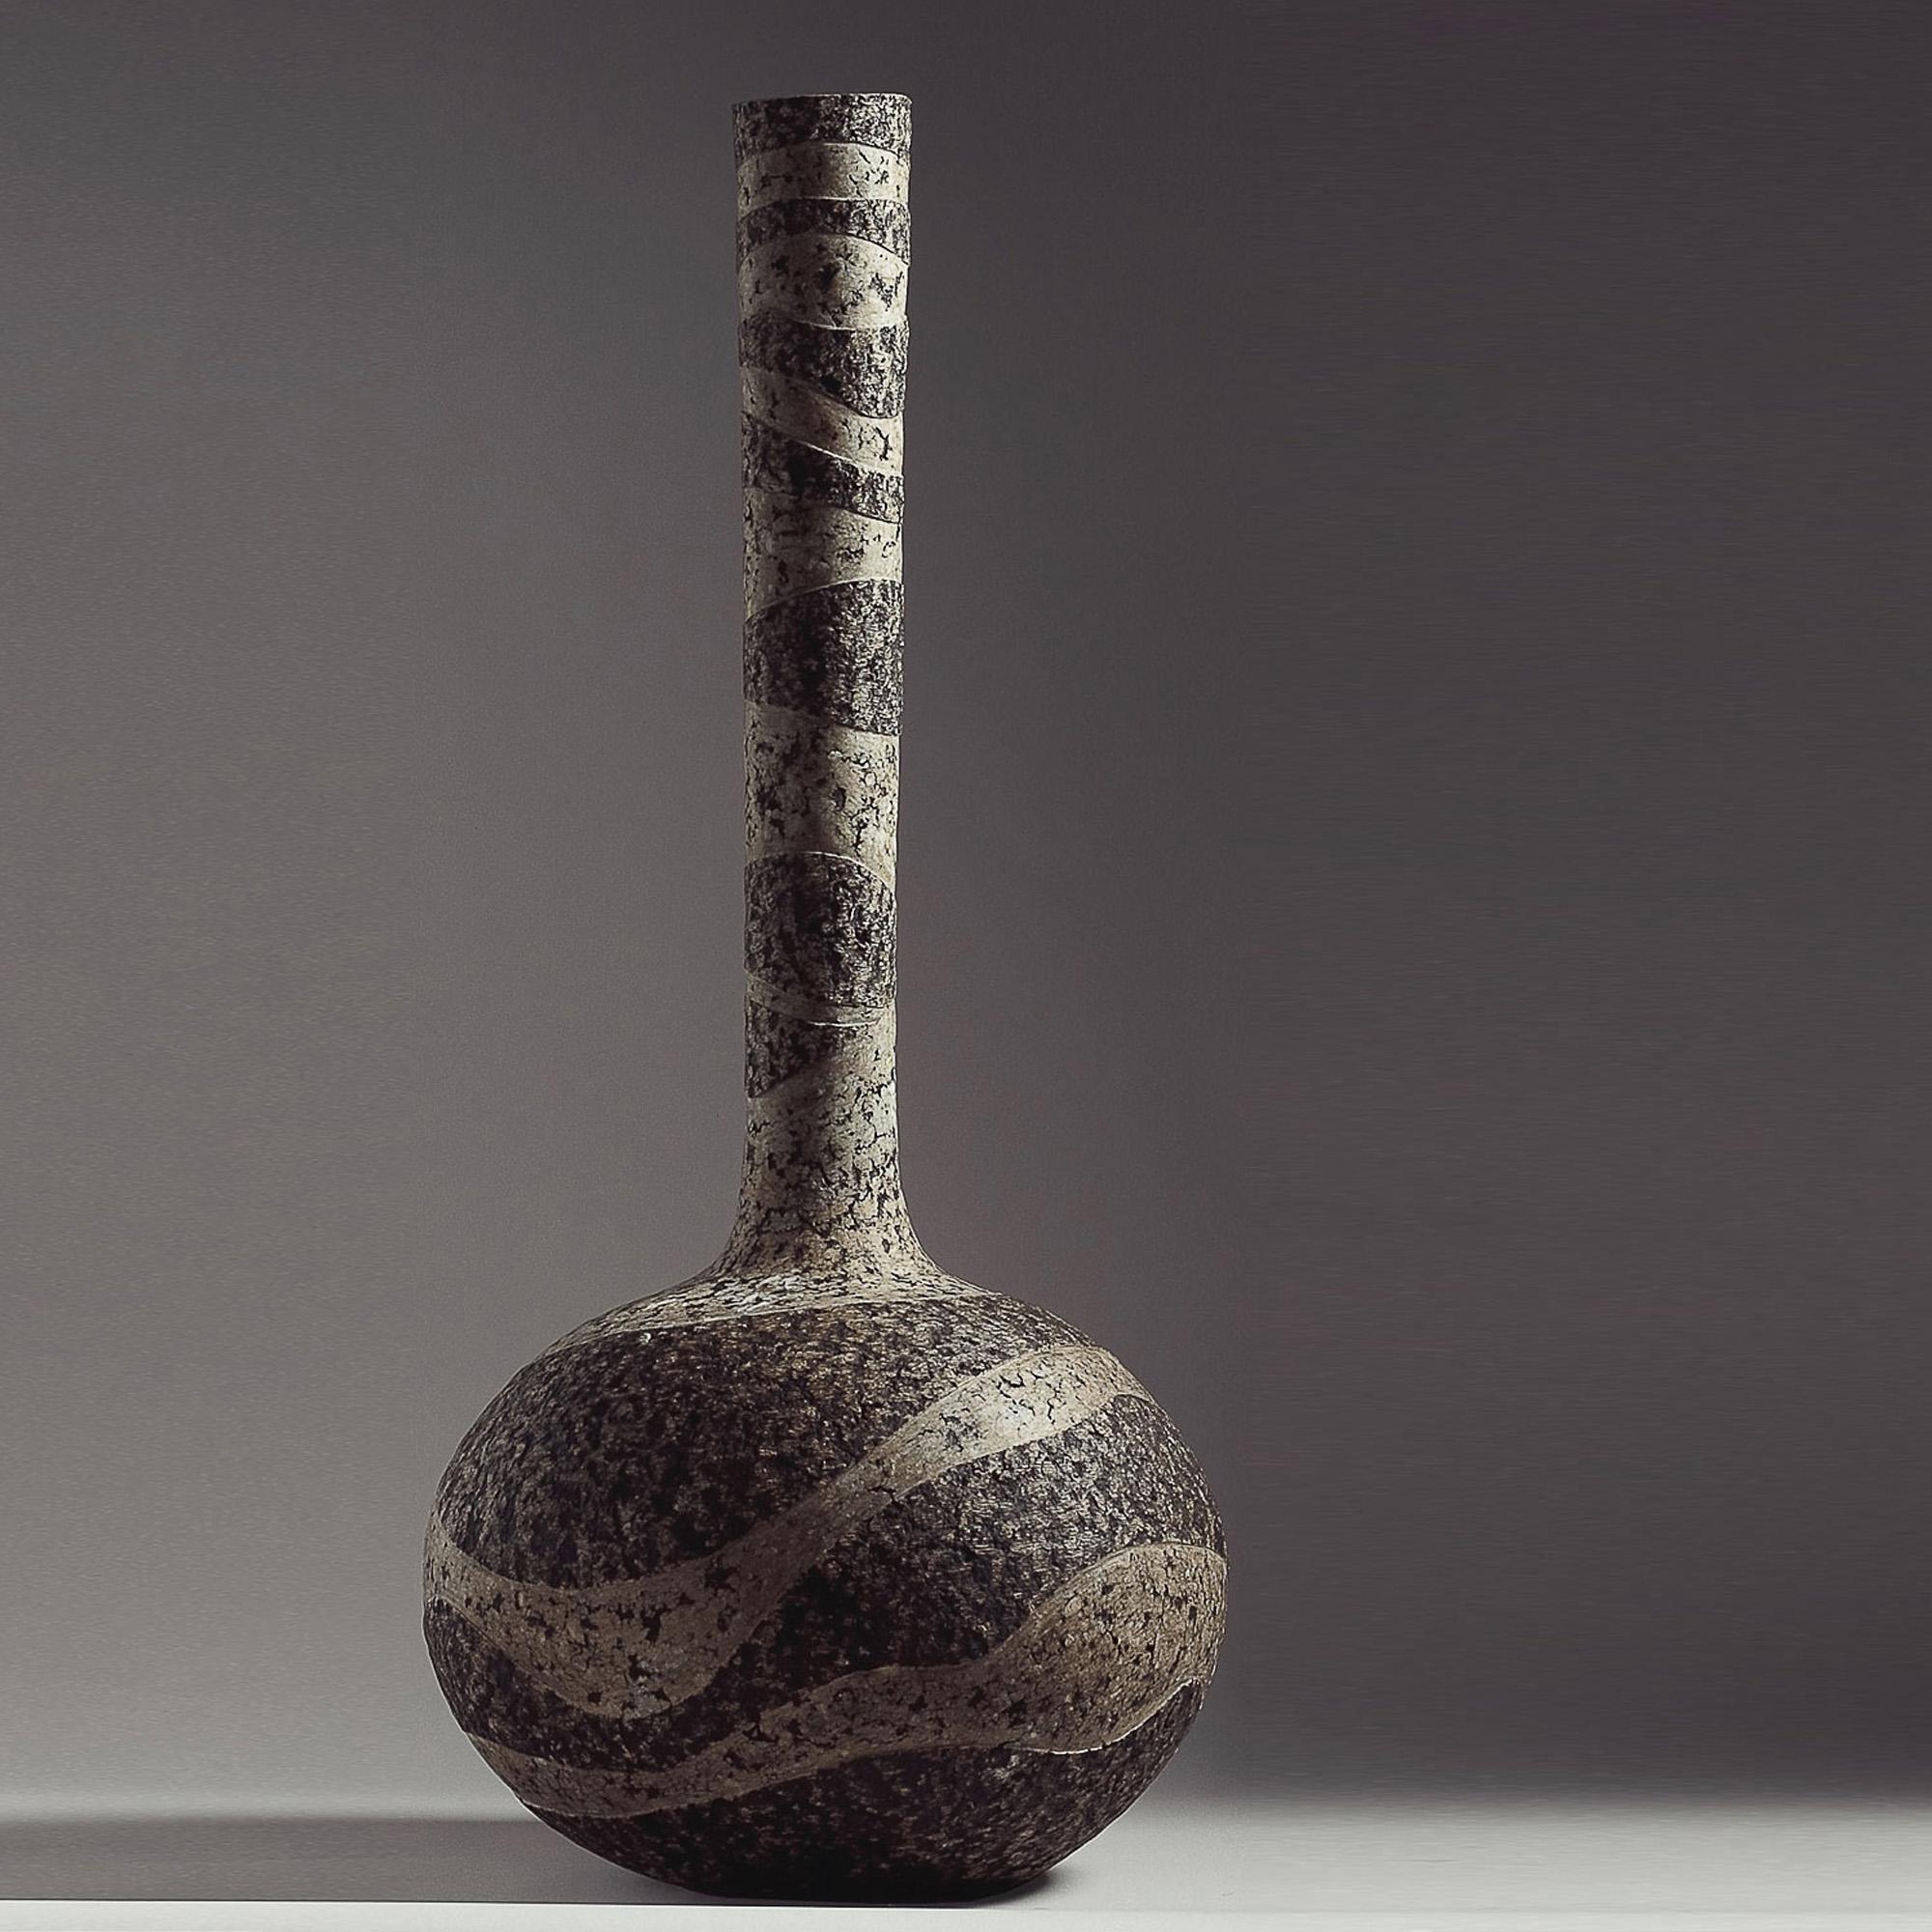 Vase sculptural

Une fusion de robustesse et d'élégance, d'archaïsme et de modernité. Les vases ont la particularité de ressembler à des sculptures. Il s'agit d'une œuvre d'art fonctionnelle qui ajoute une touche unique à tout intérieur.

Le